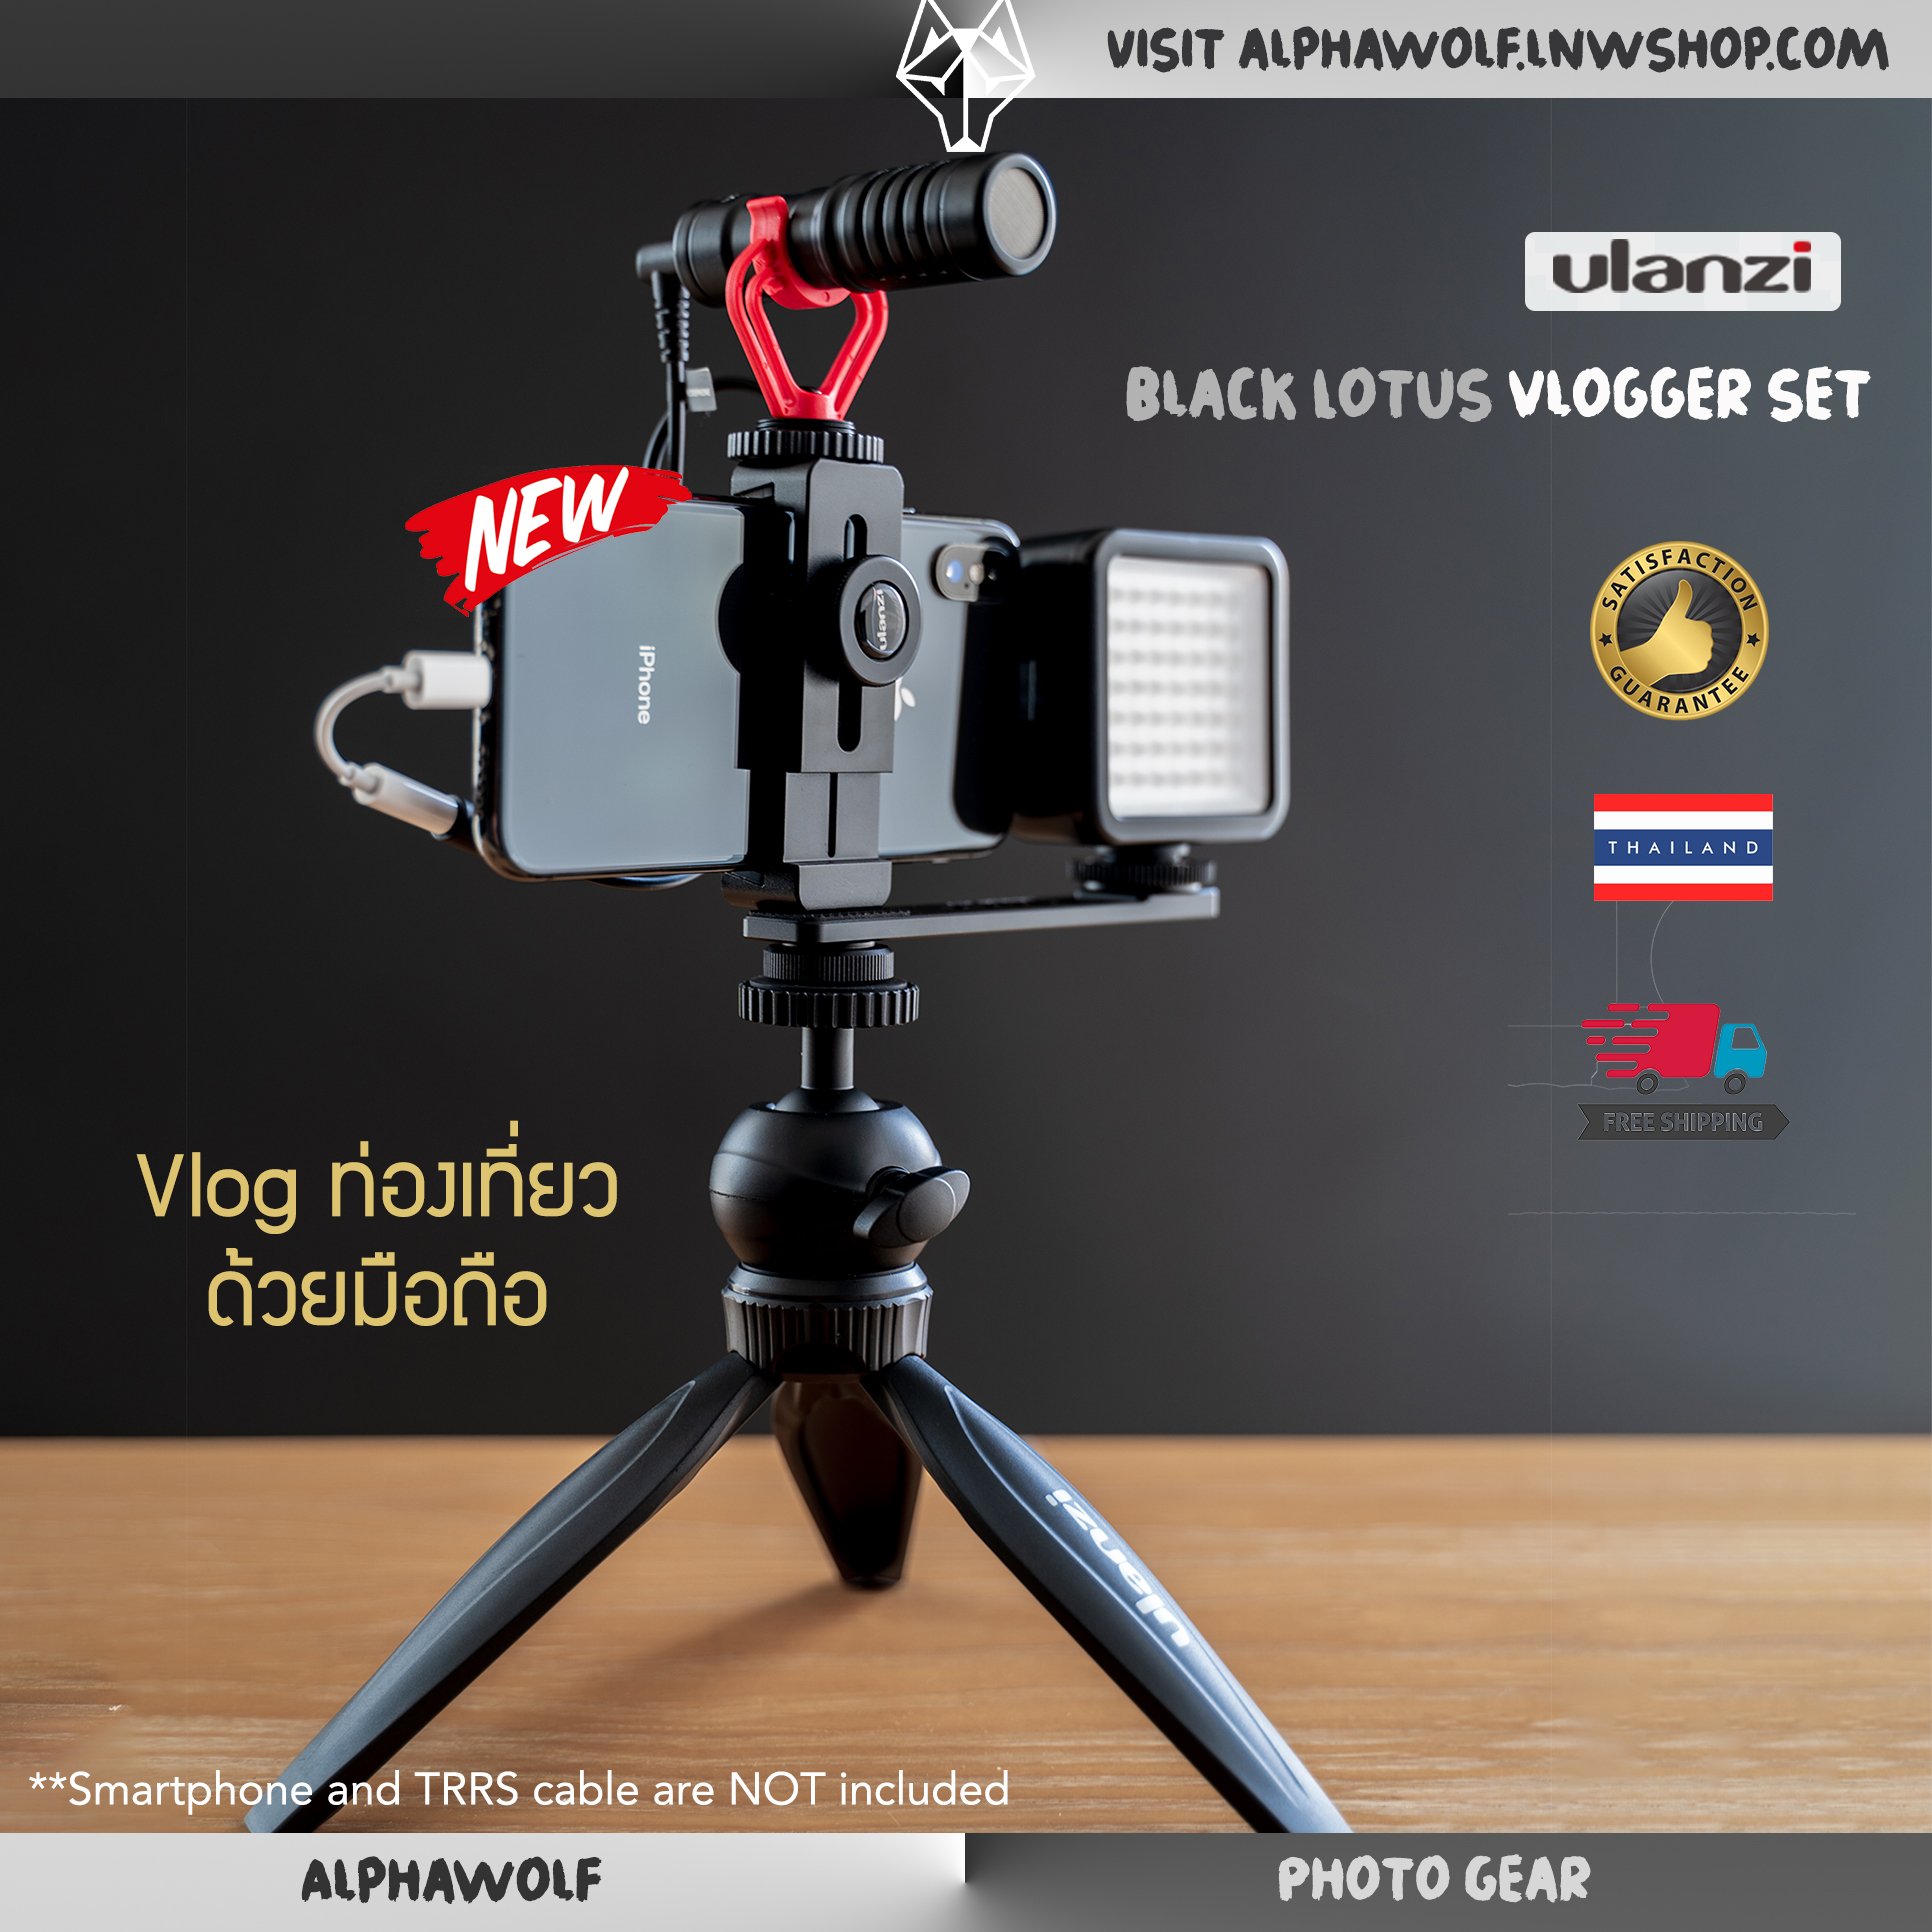 [ชุดVlogท่องเที่ยว] Ulanzi Black Lotus Travel Vlog Set ถ่ายรูป ถ่ายวีดีโอ ไลฟ์สด รองรับมือถือ Smartphone ทุกรุ่น  ที่จับมือถือ + ขาตั้งกล้อง + ไมค์ติดกล้อง + ไฟ + เพลทเสริม /ALPHAWOLF